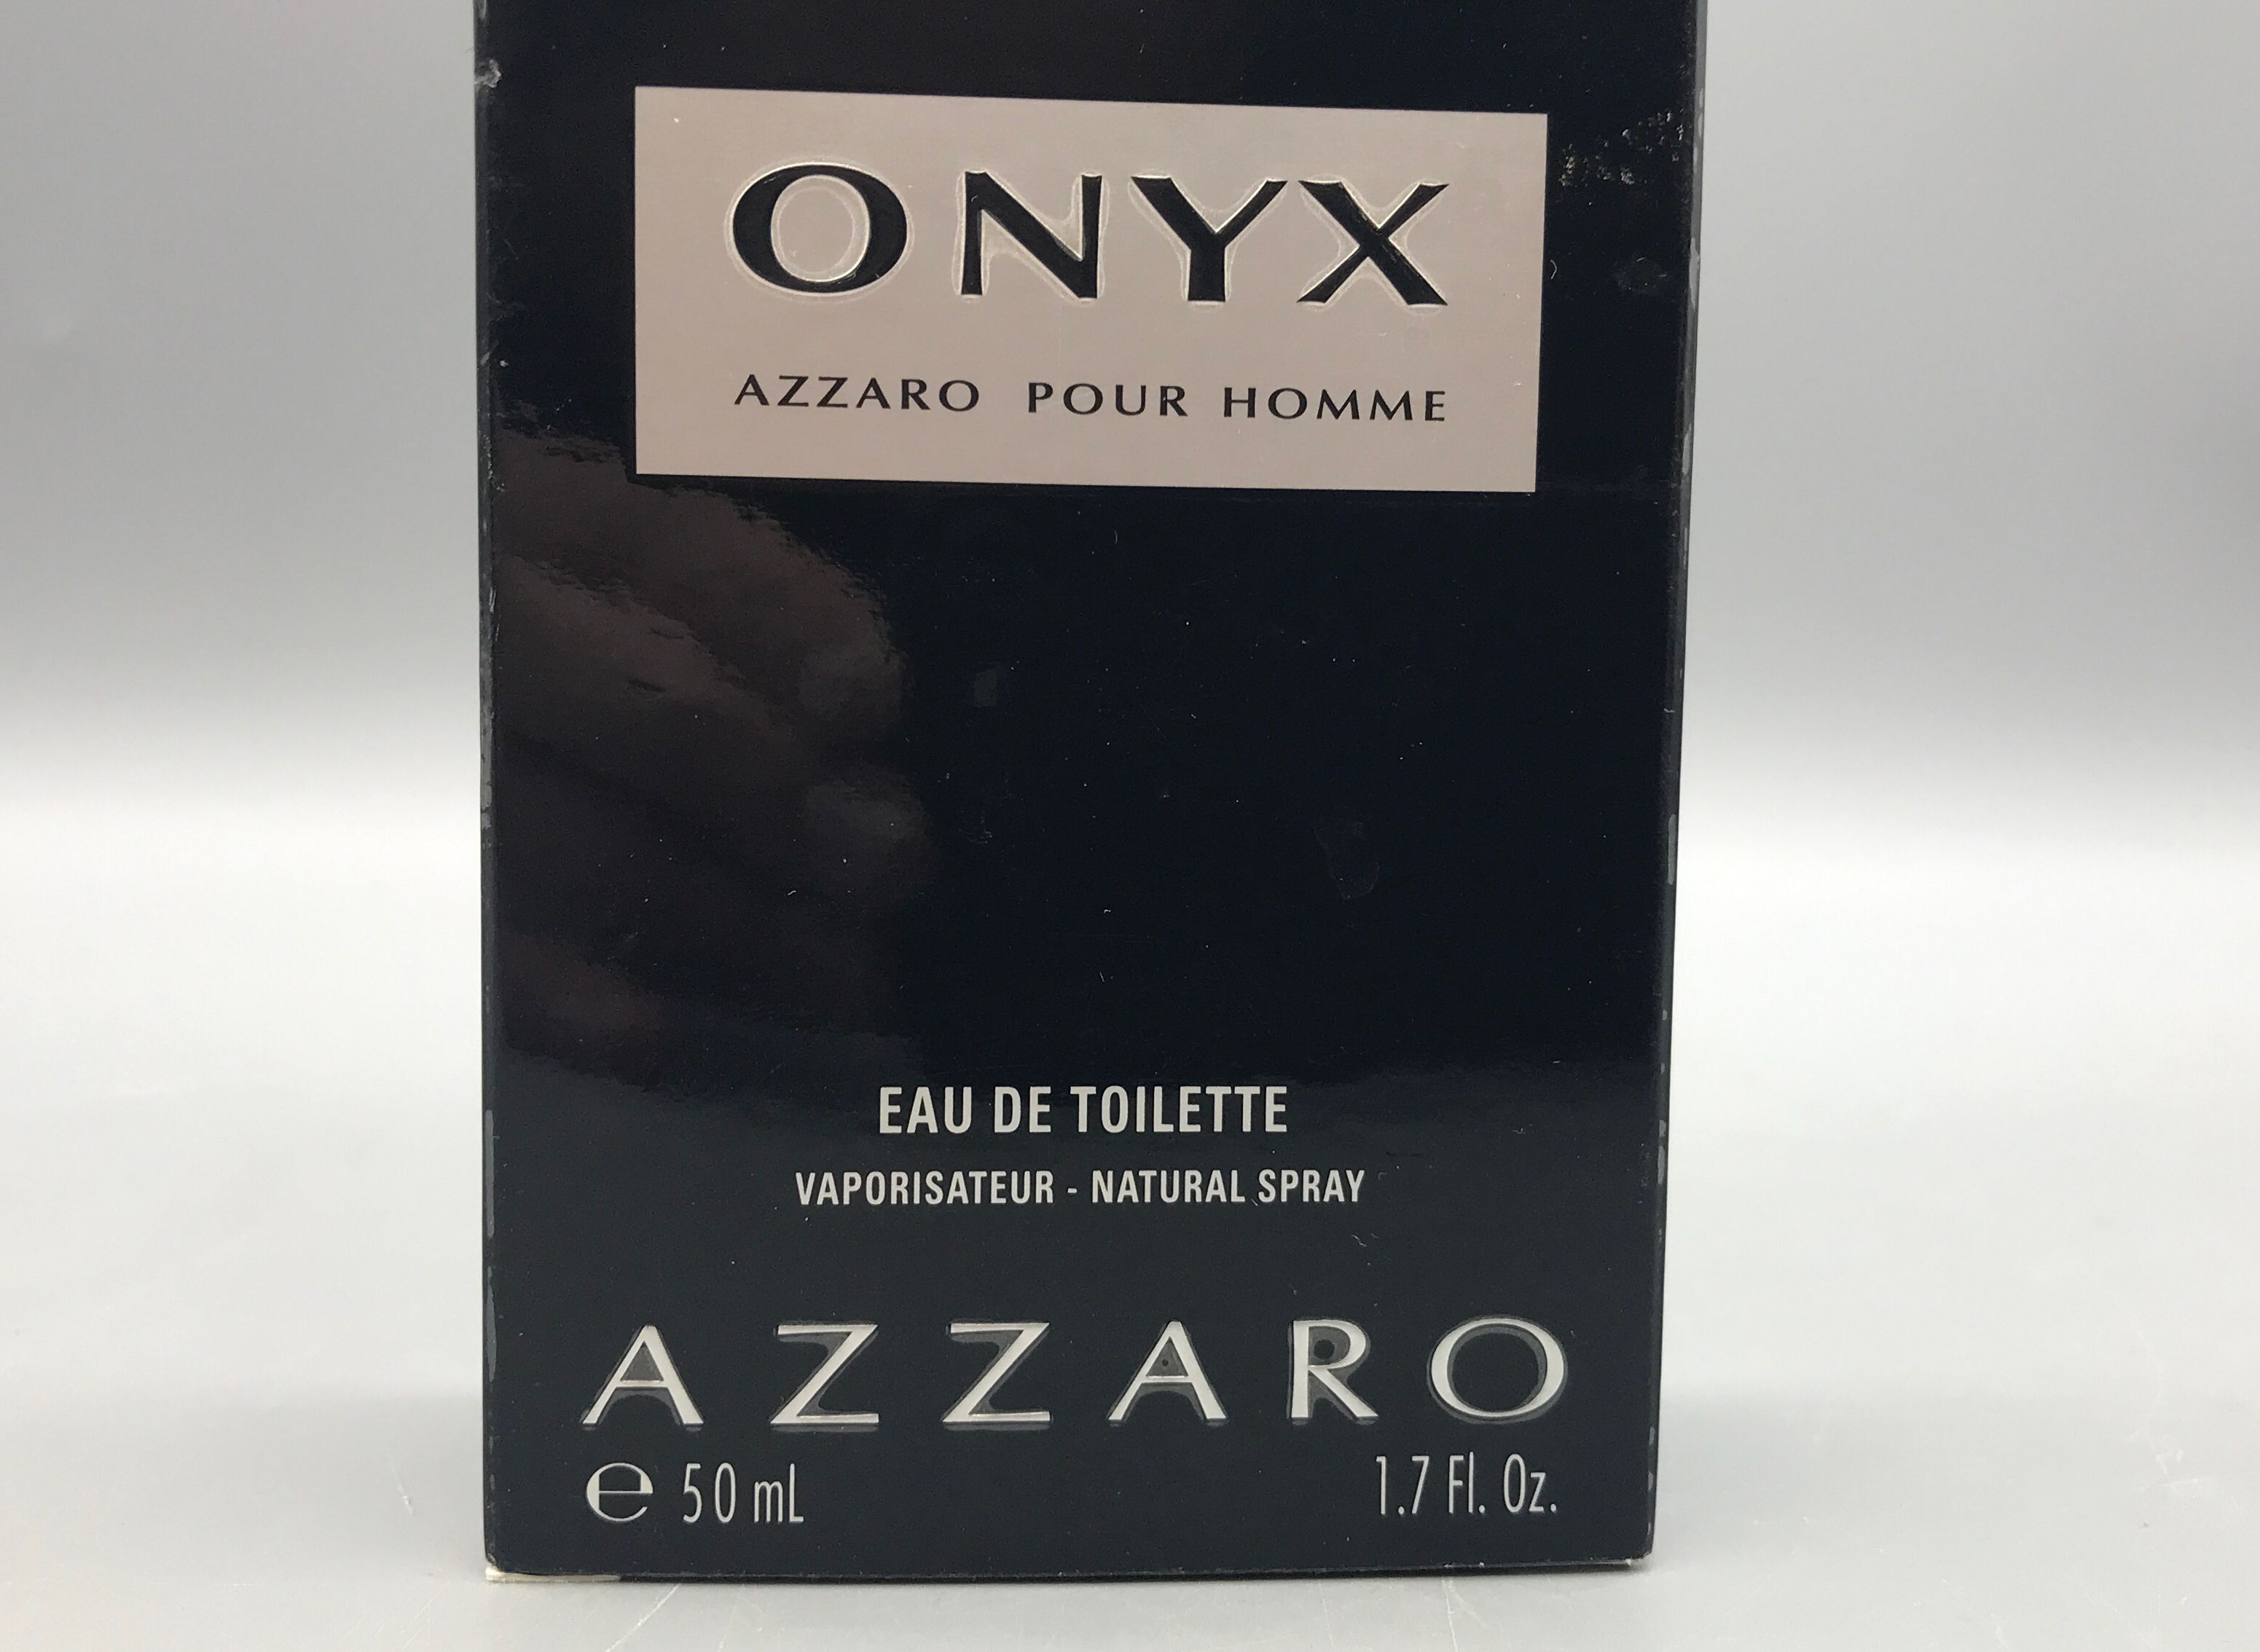 "Onyx" Azzaro Pour Homme by Azzaro - 1.7 Fl. Oz. - Eau De Toilette Spray